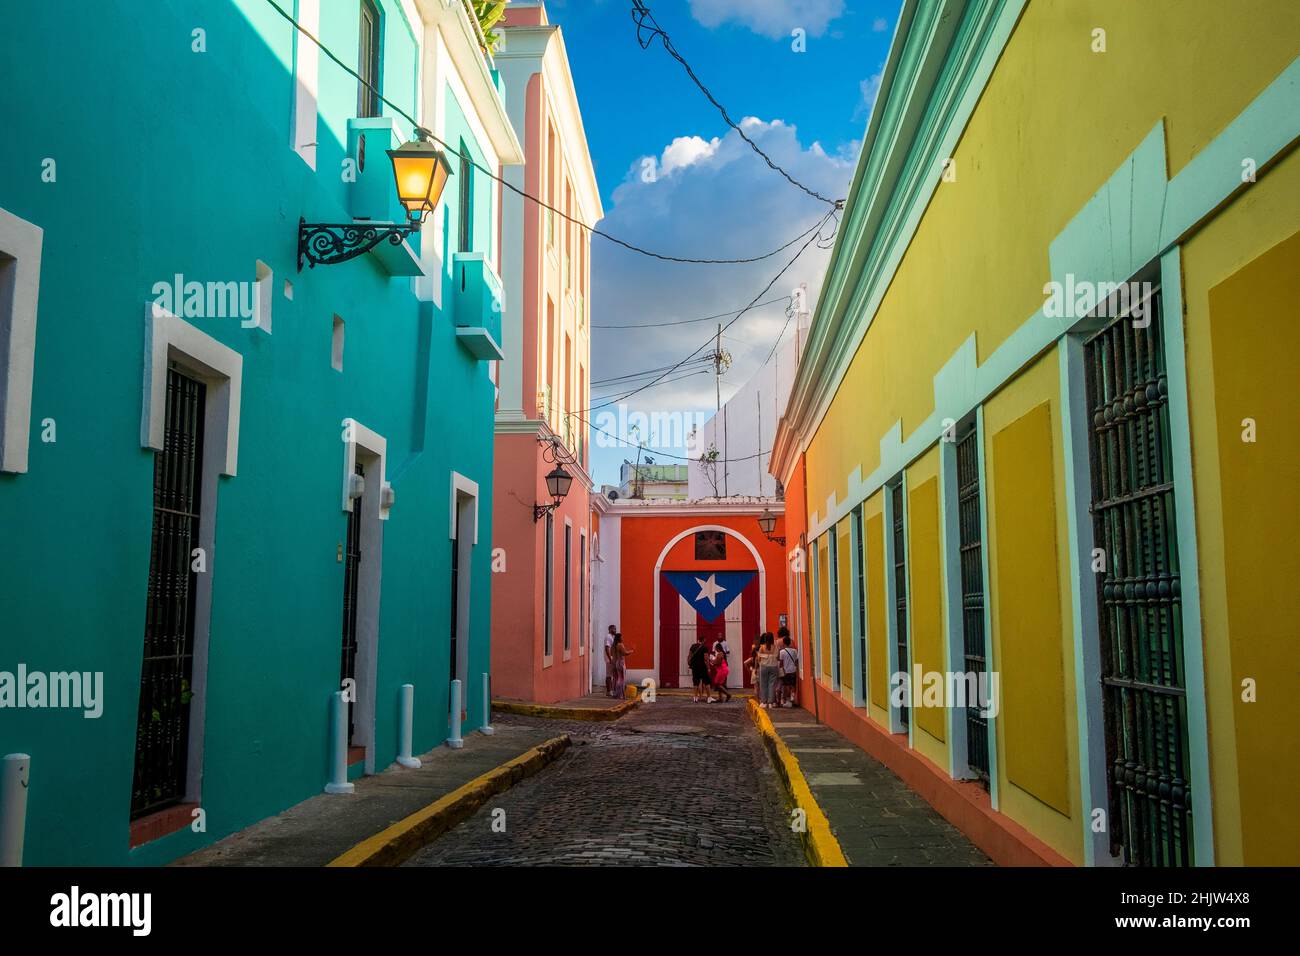 Touristen neben einem Wandbild der Puerto-ricanischen Flagge in einer Straße voller farbenfroher Häuser, Old San Juan, Puerto Rico Stockfoto